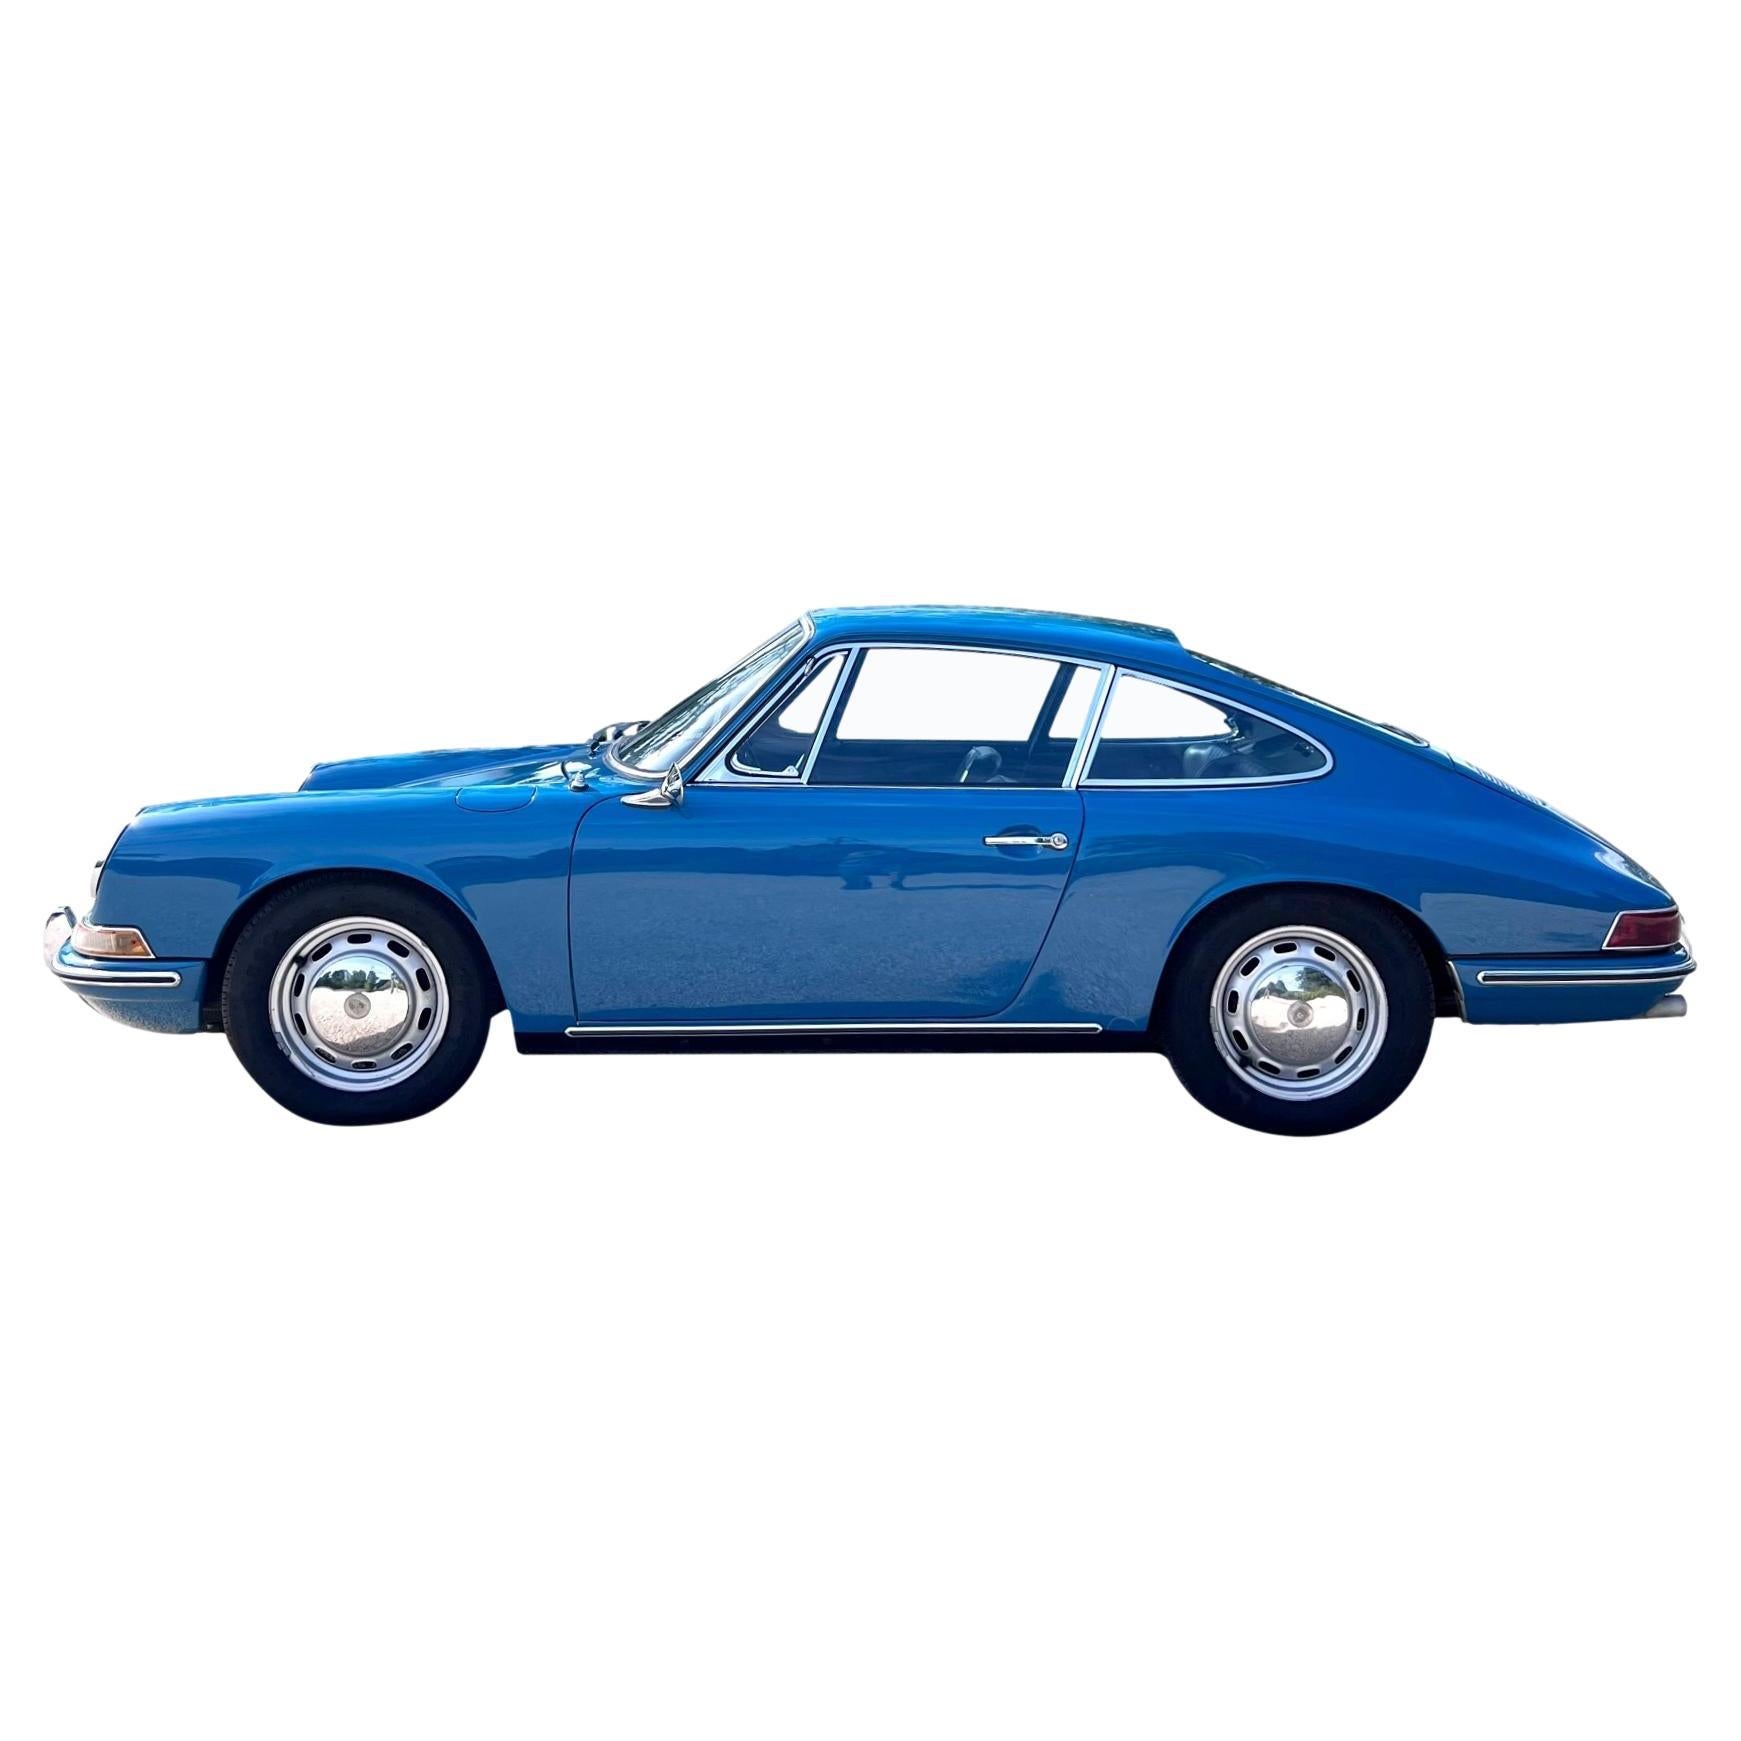 1967 Aga Blue 5-Speed Porsche 912 For Sale